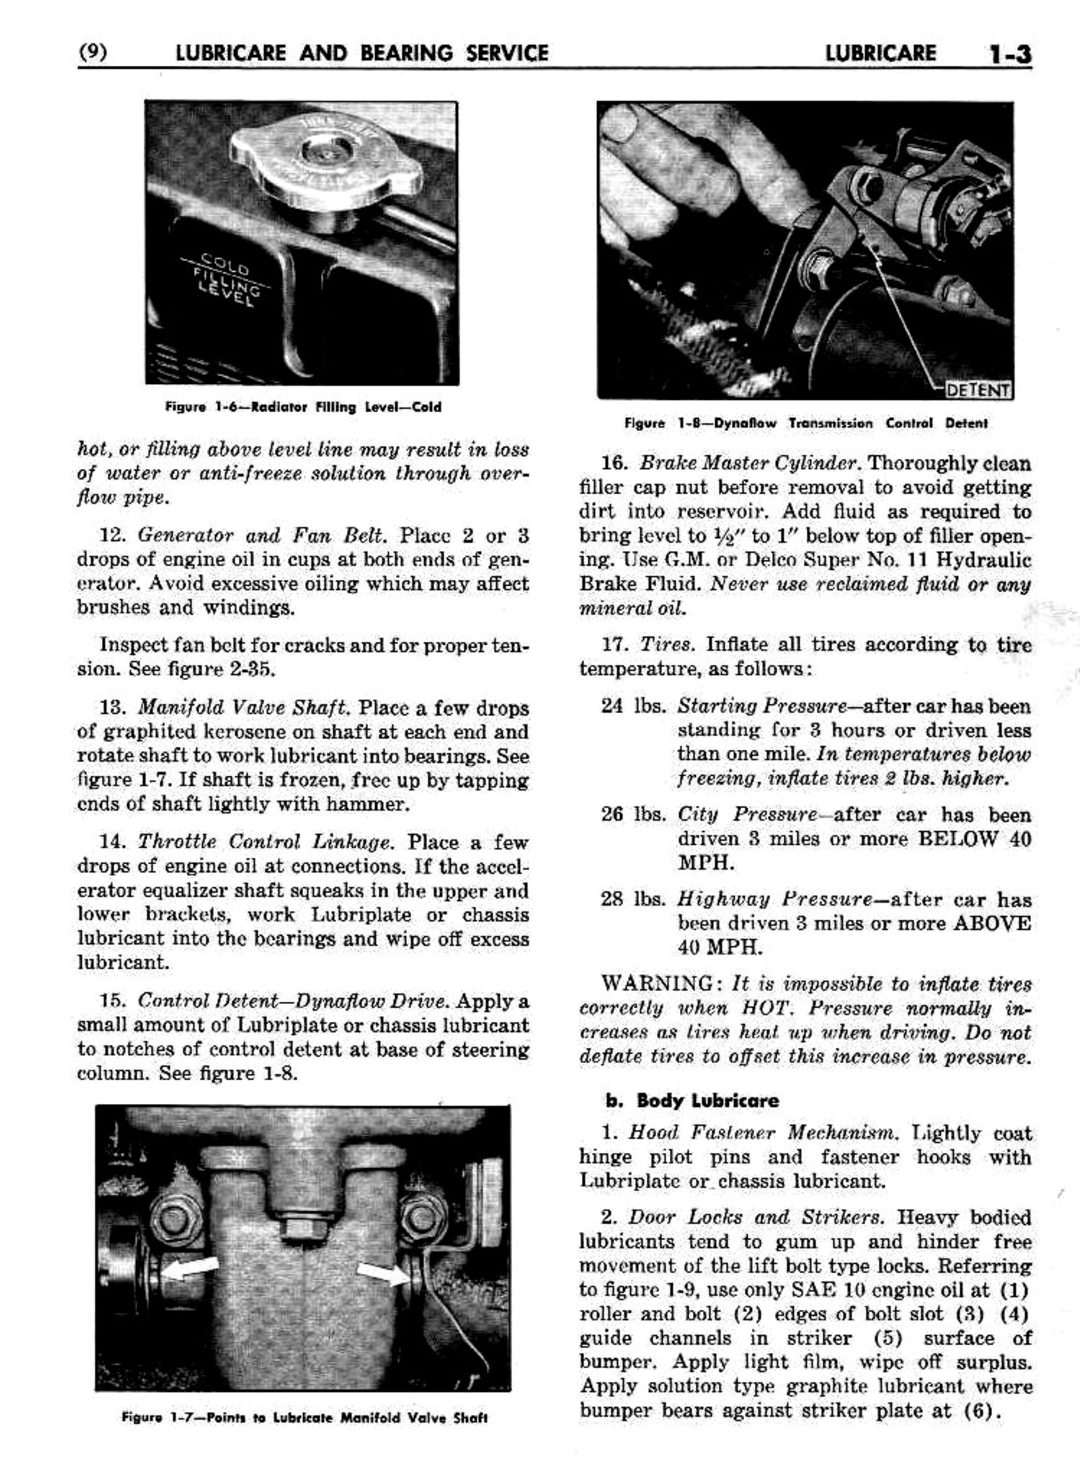 n_02 1951 Buick Shop Manual - Lubricare-003-003.jpg